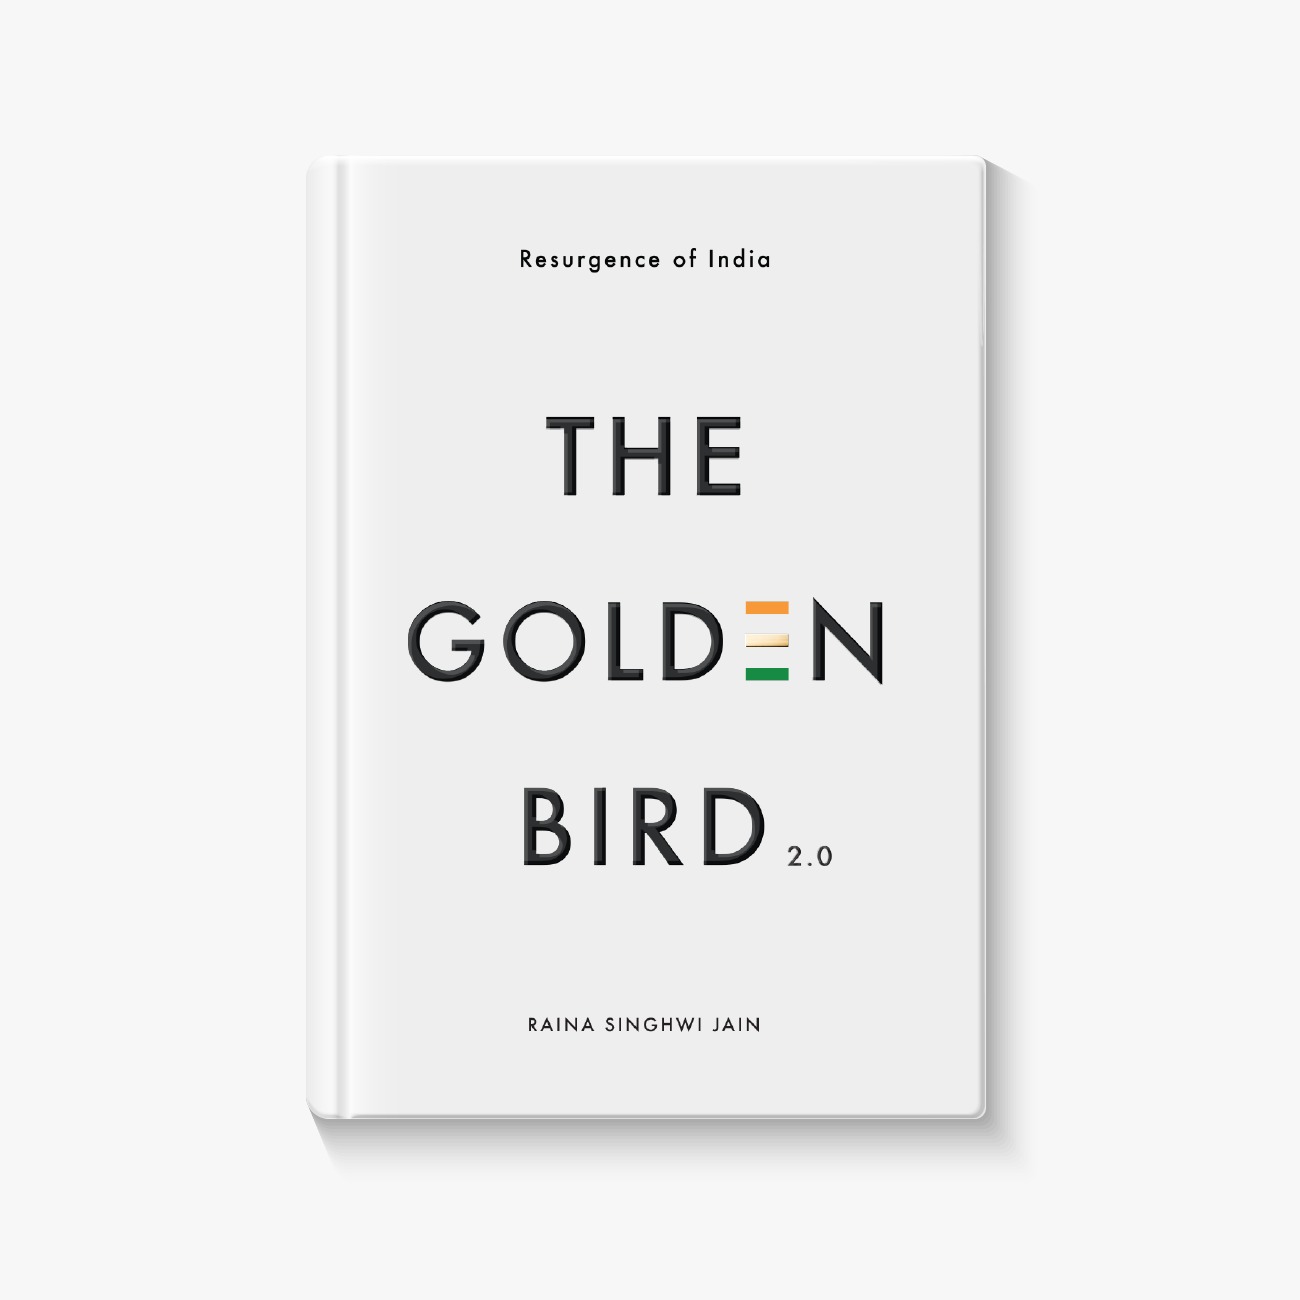  The Golden Bird 2.0